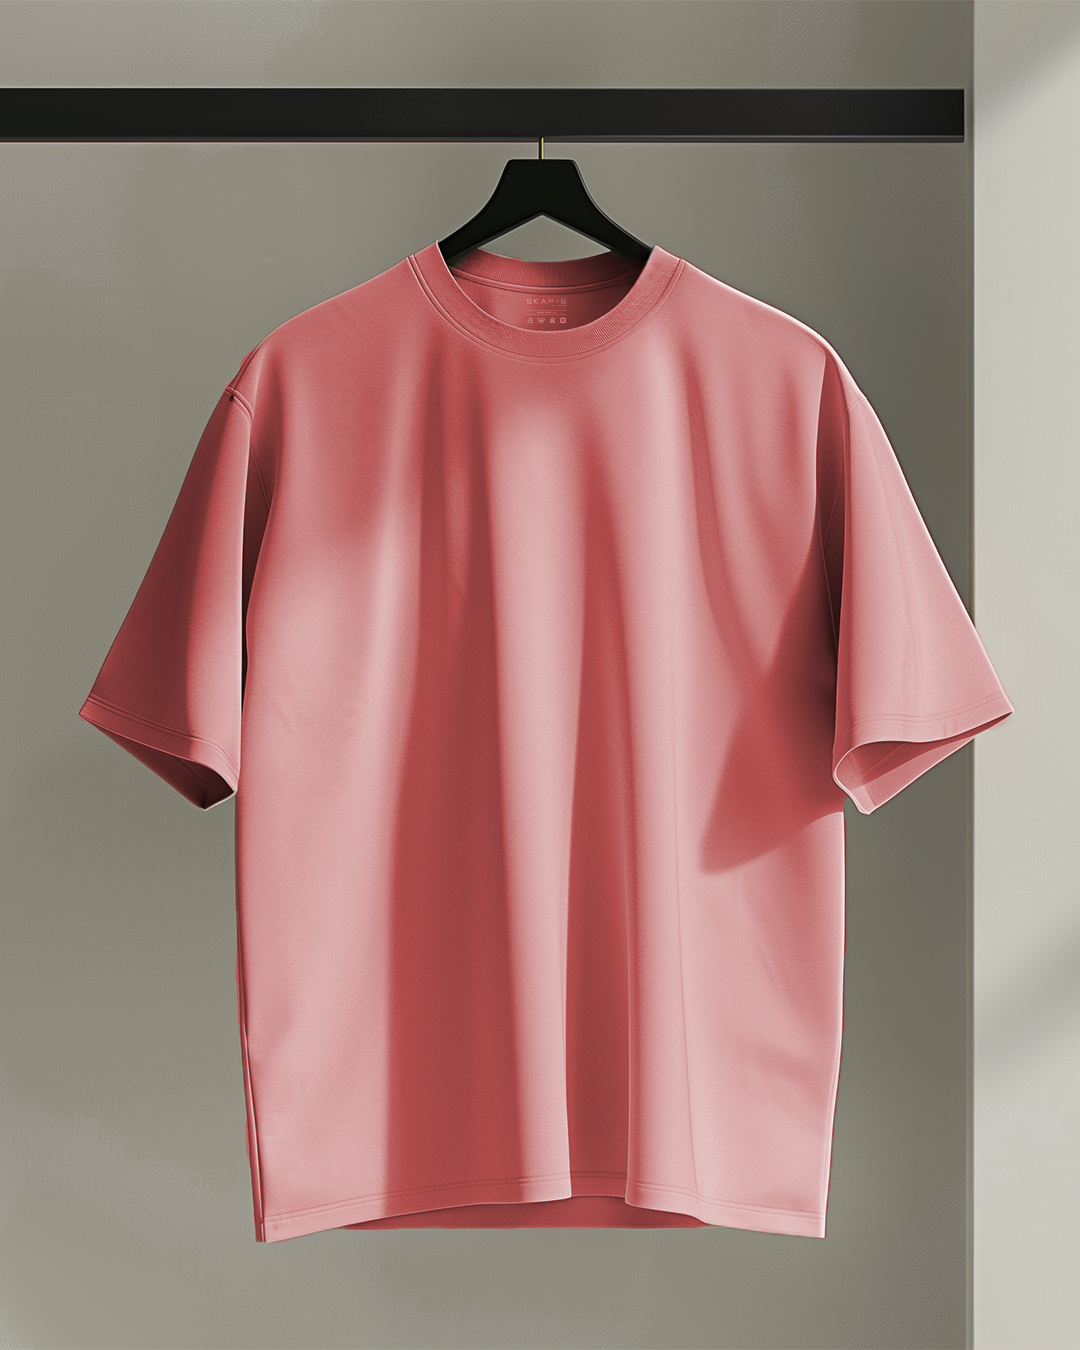 Blush Rose Oversized T-Shirt & Lounge Shorts Co-Ords